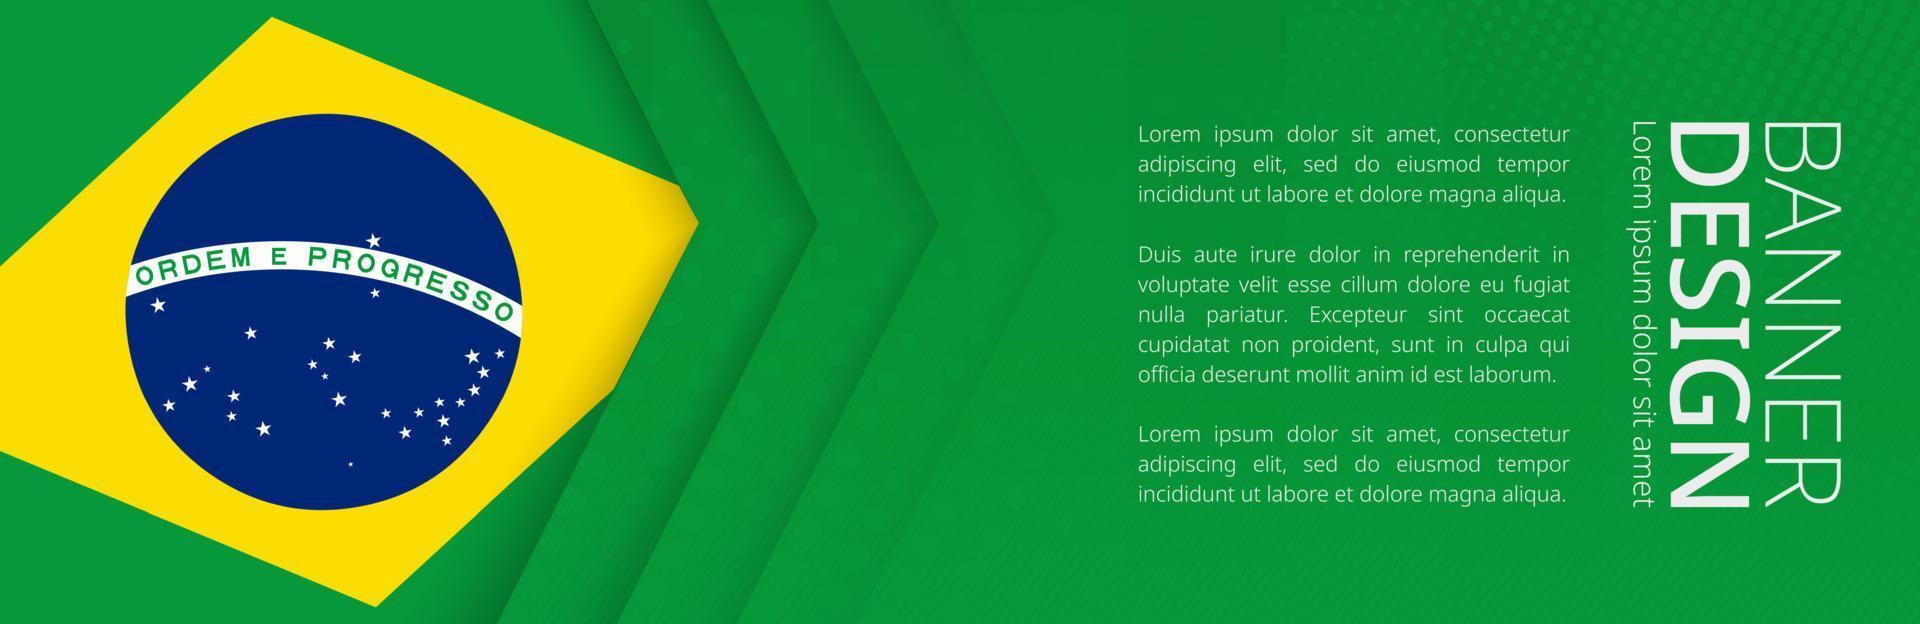 Bannervorlage mit brasilianischer Flagge für die Werbung für Reisen, Geschäfte und andere. vektor